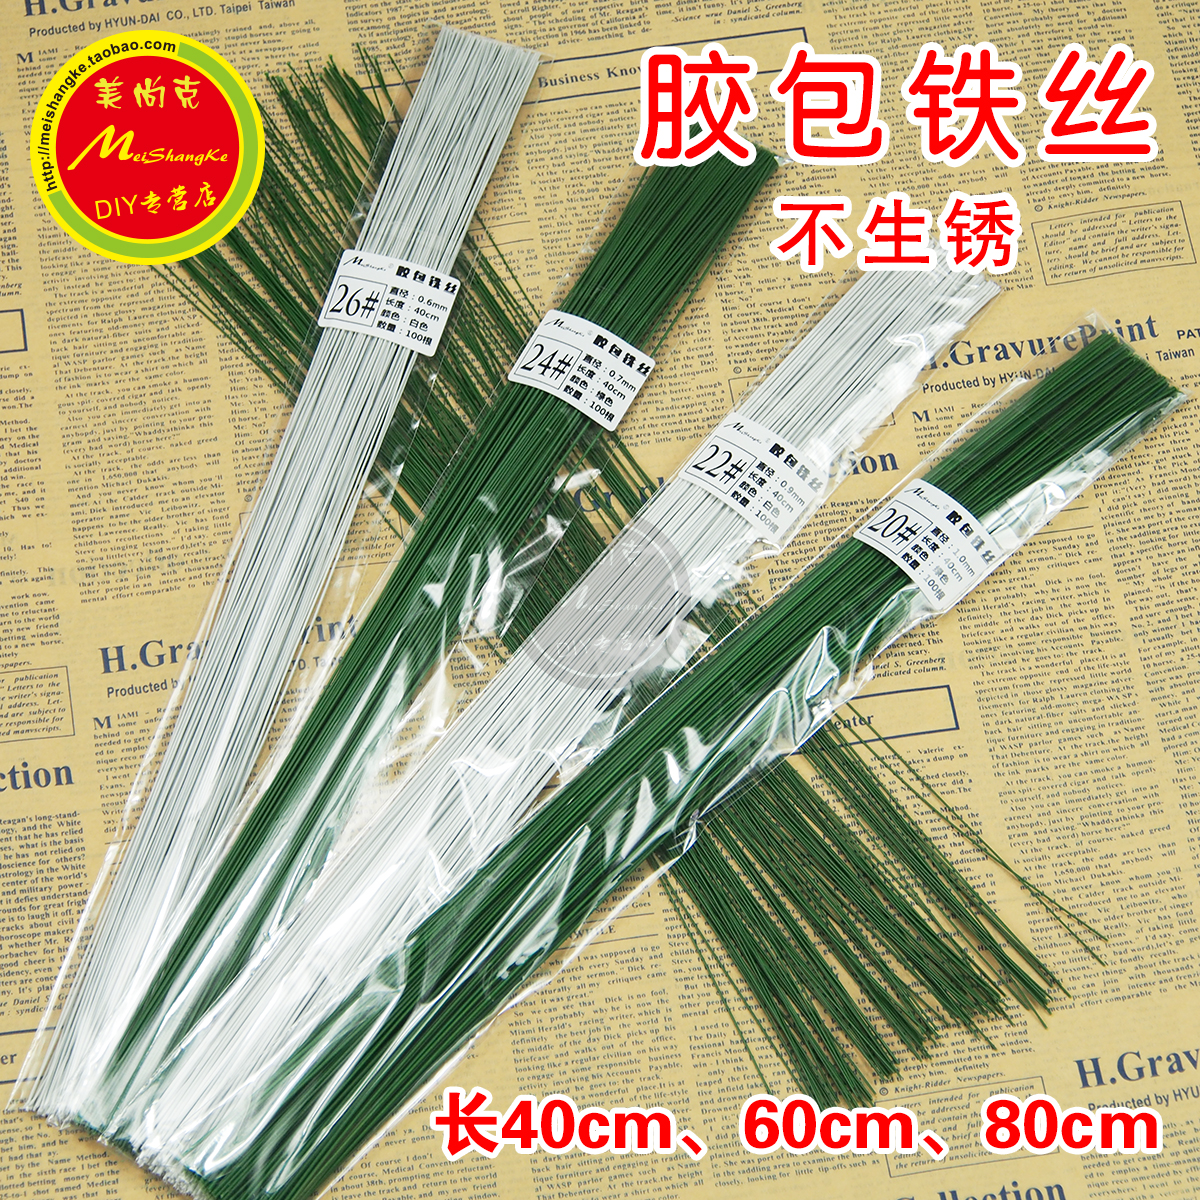 花幹紙- 鐵絲包覆紙, 台灣高品質花幹紙- 鐵絲包覆紙製造商